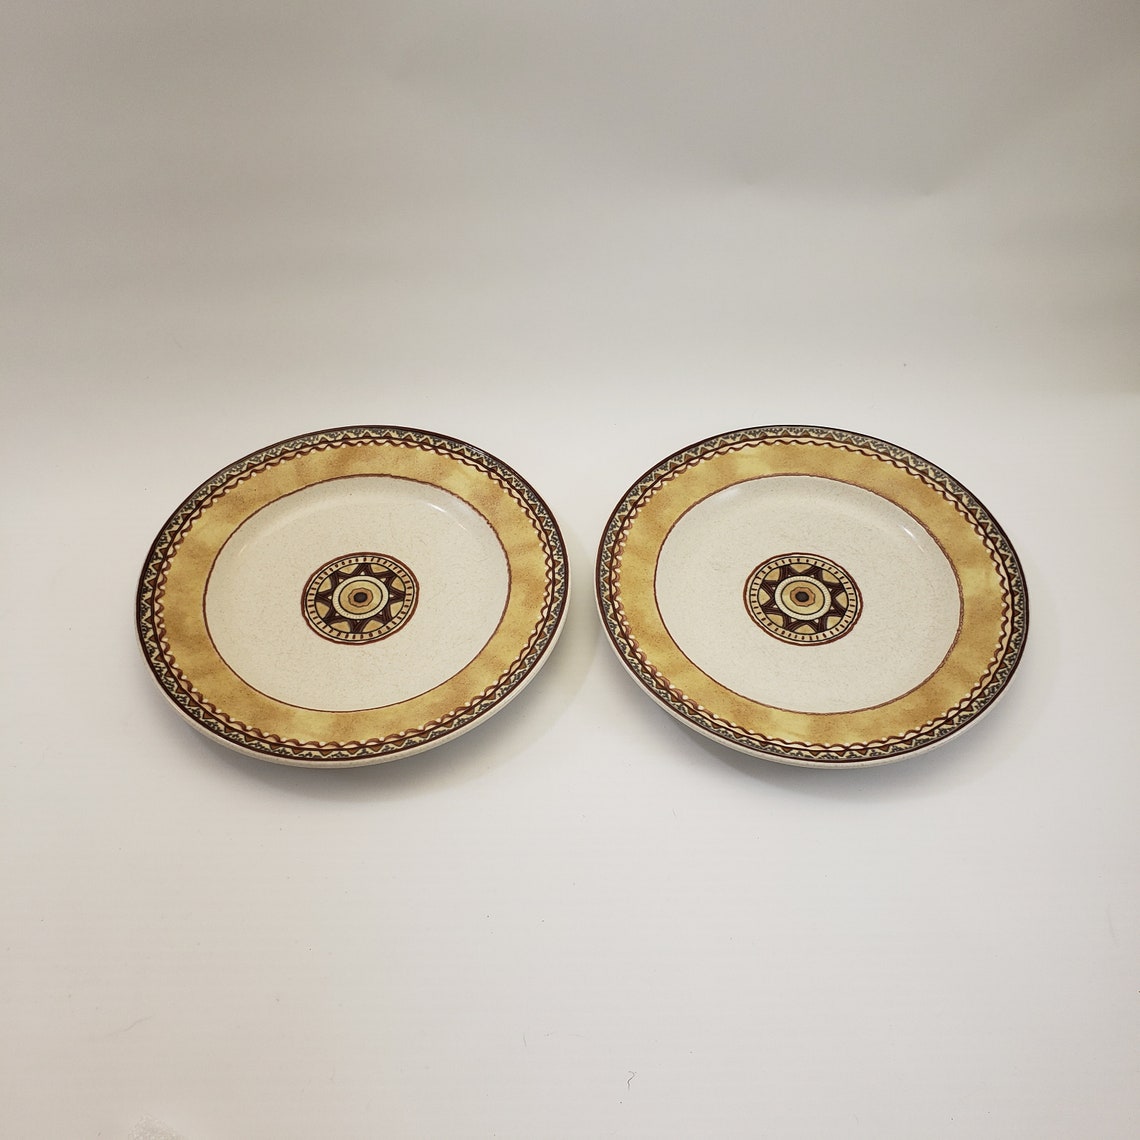 Mikasa Intaglio Tempe Stoneware Luncheon Plates 8.25 diameter in Good ...